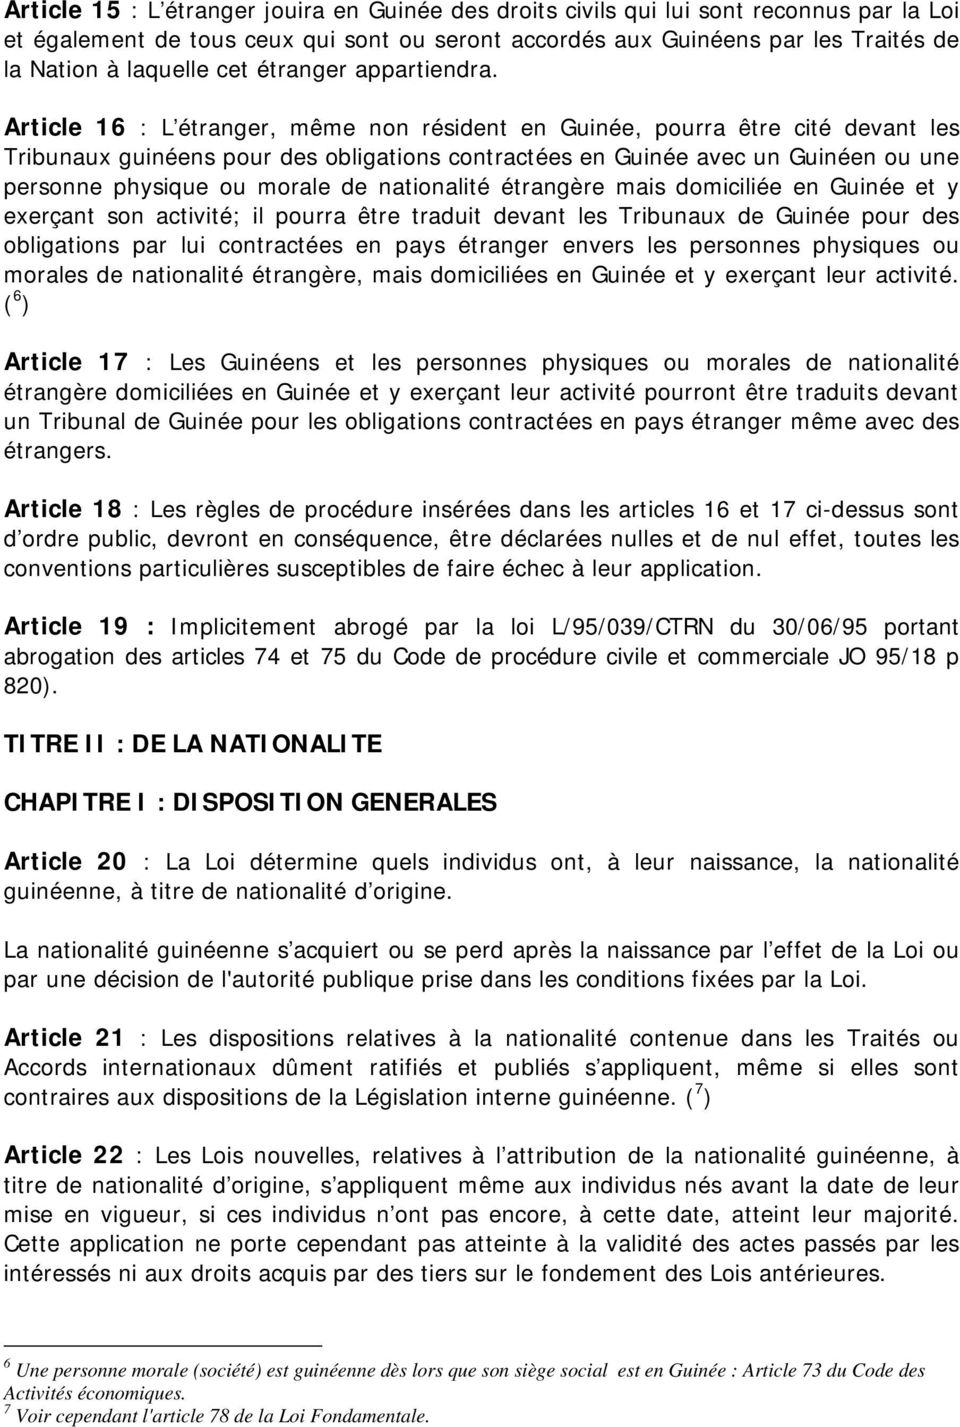 Article 16 : L étranger, même non résident en Guinée, pourra être cité devant les Tribunaux guinéens pour des obligations contractées en Guinée avec un Guinéen ou une personne physique ou morale de